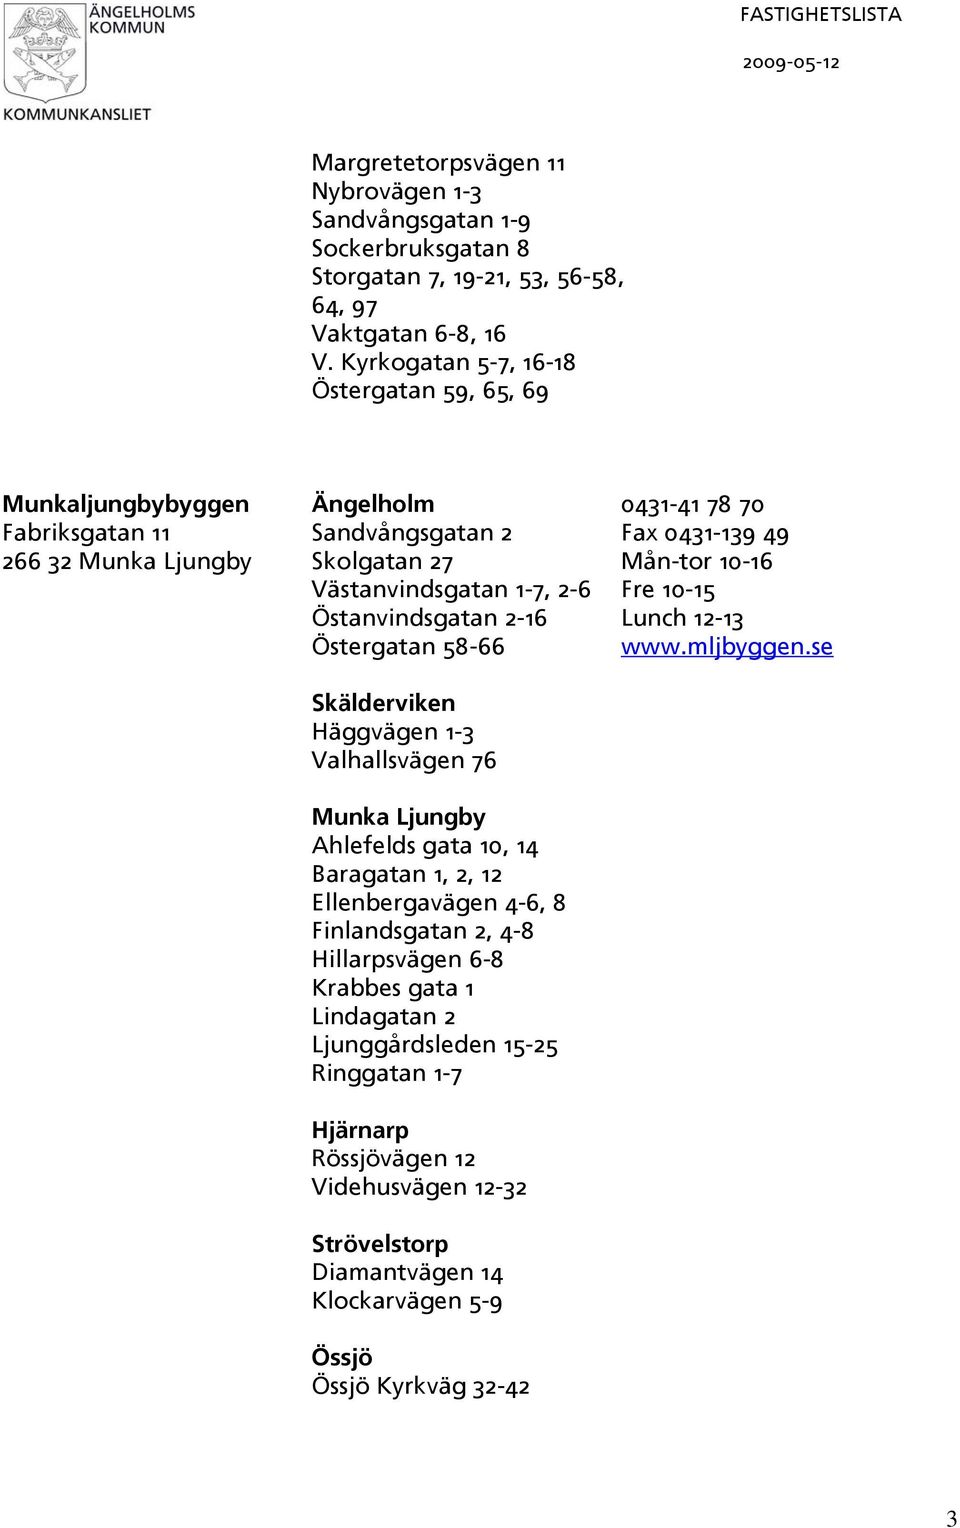 Västanvindsgatan 1-7, 2-6 Fre 10-15 Östanvindsgatan 2-16 Lunch 12-13 Östergatan 58-66 www.mljbyggen.